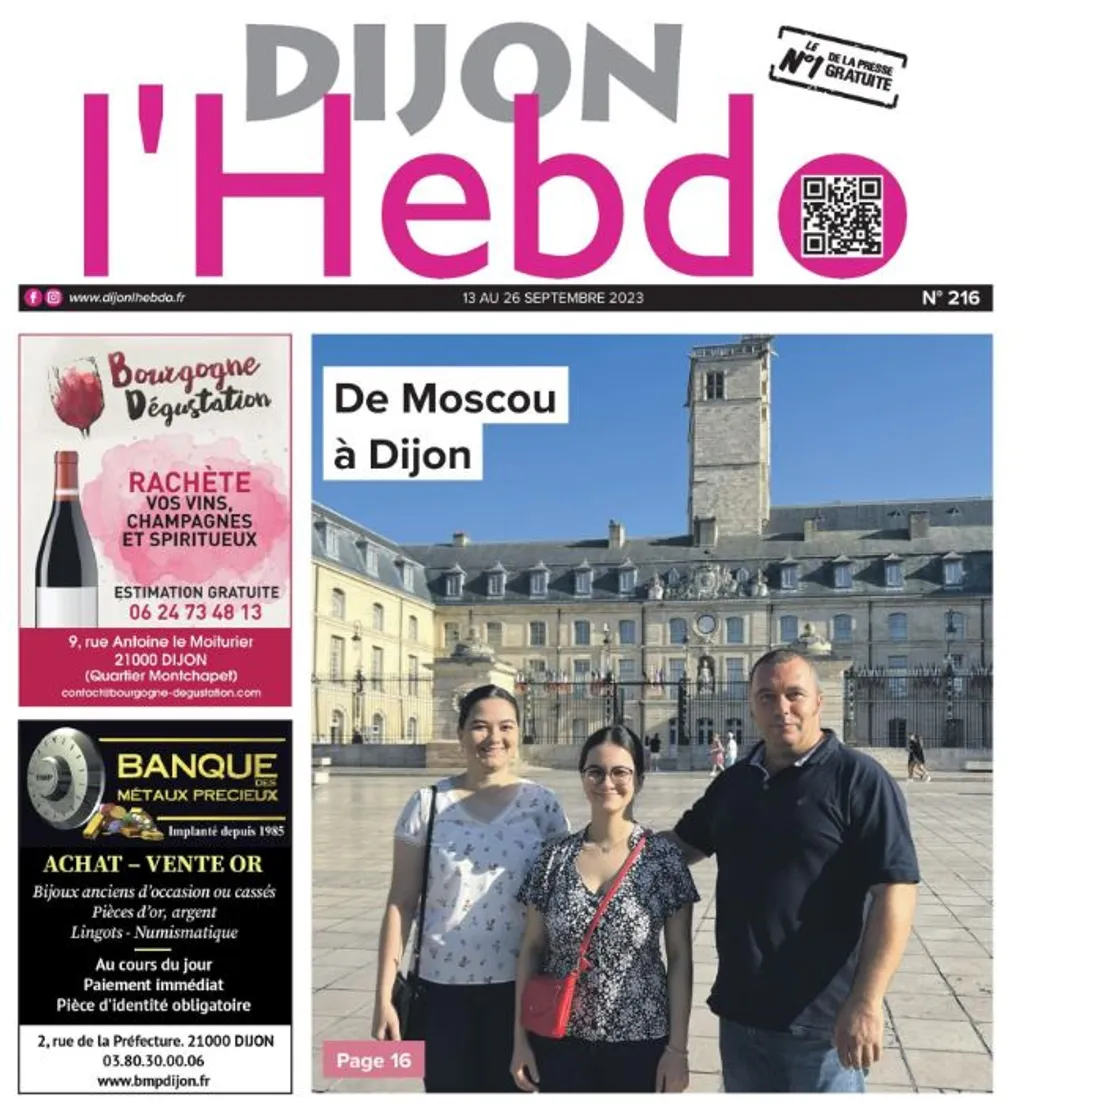 Le numéro de rentrée du journal Dijon l’hebdo a été publié cette semaine